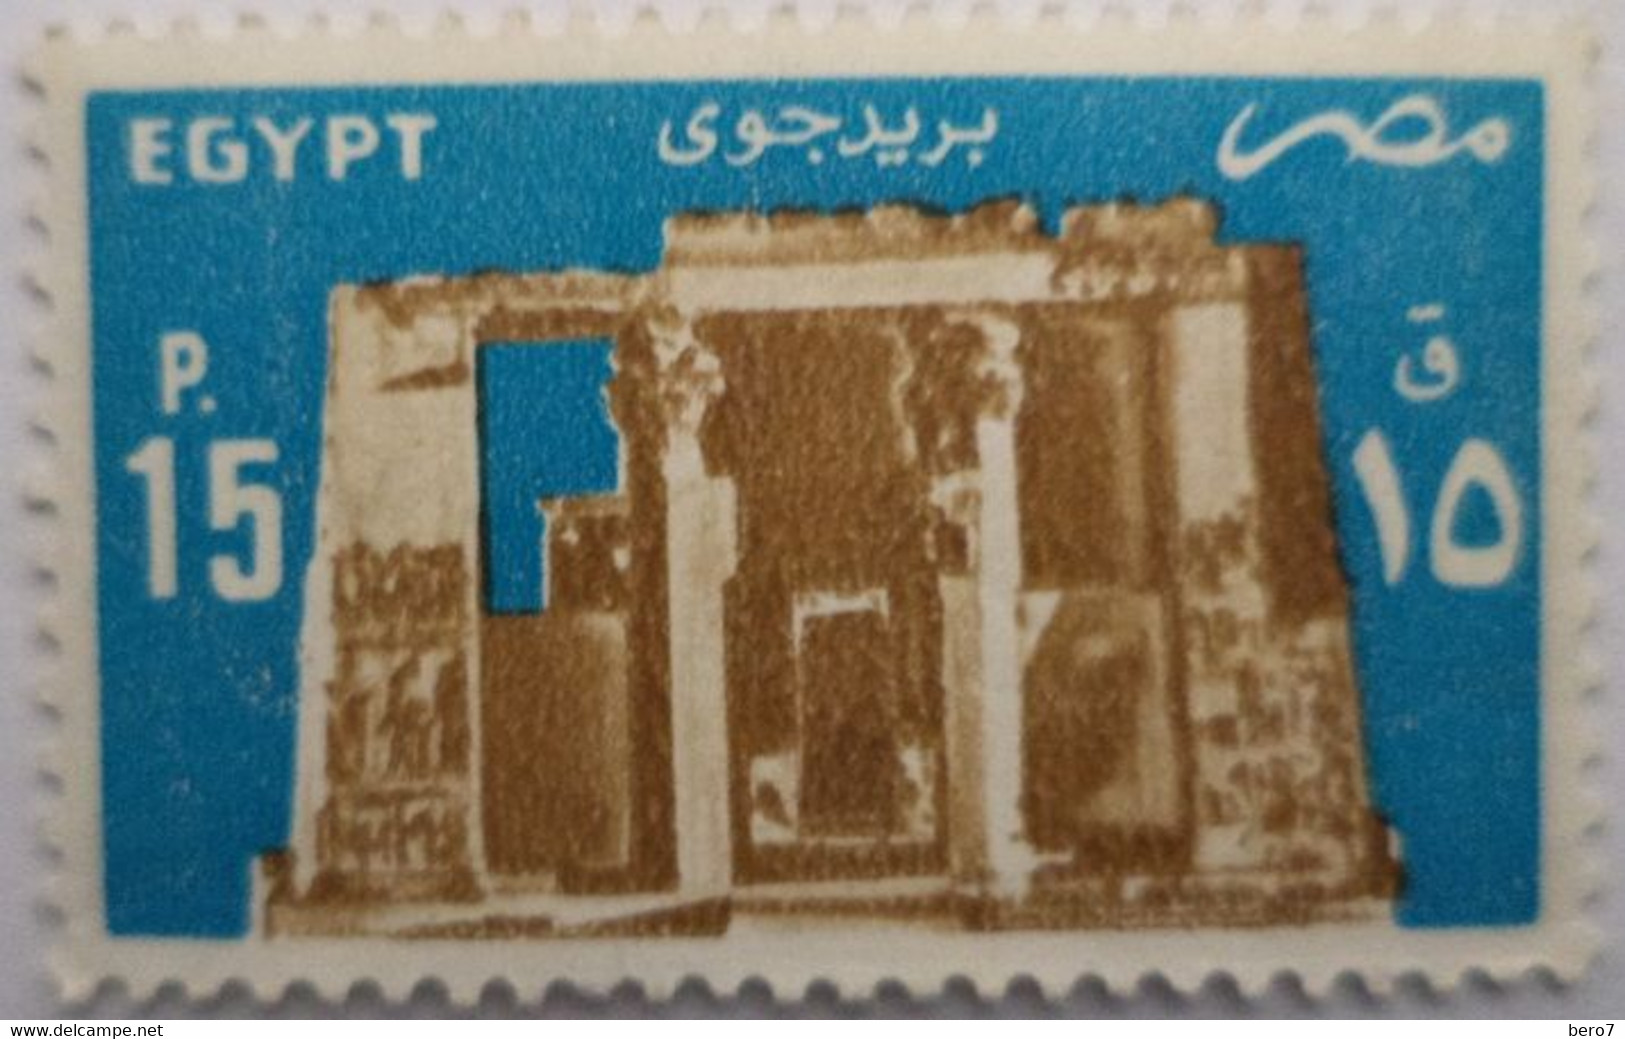 EGYPT- 1985 - Temple Of Horus, Edfu [MNH] (Egypte) (Egitto) (Ägypten) - Used Stamps